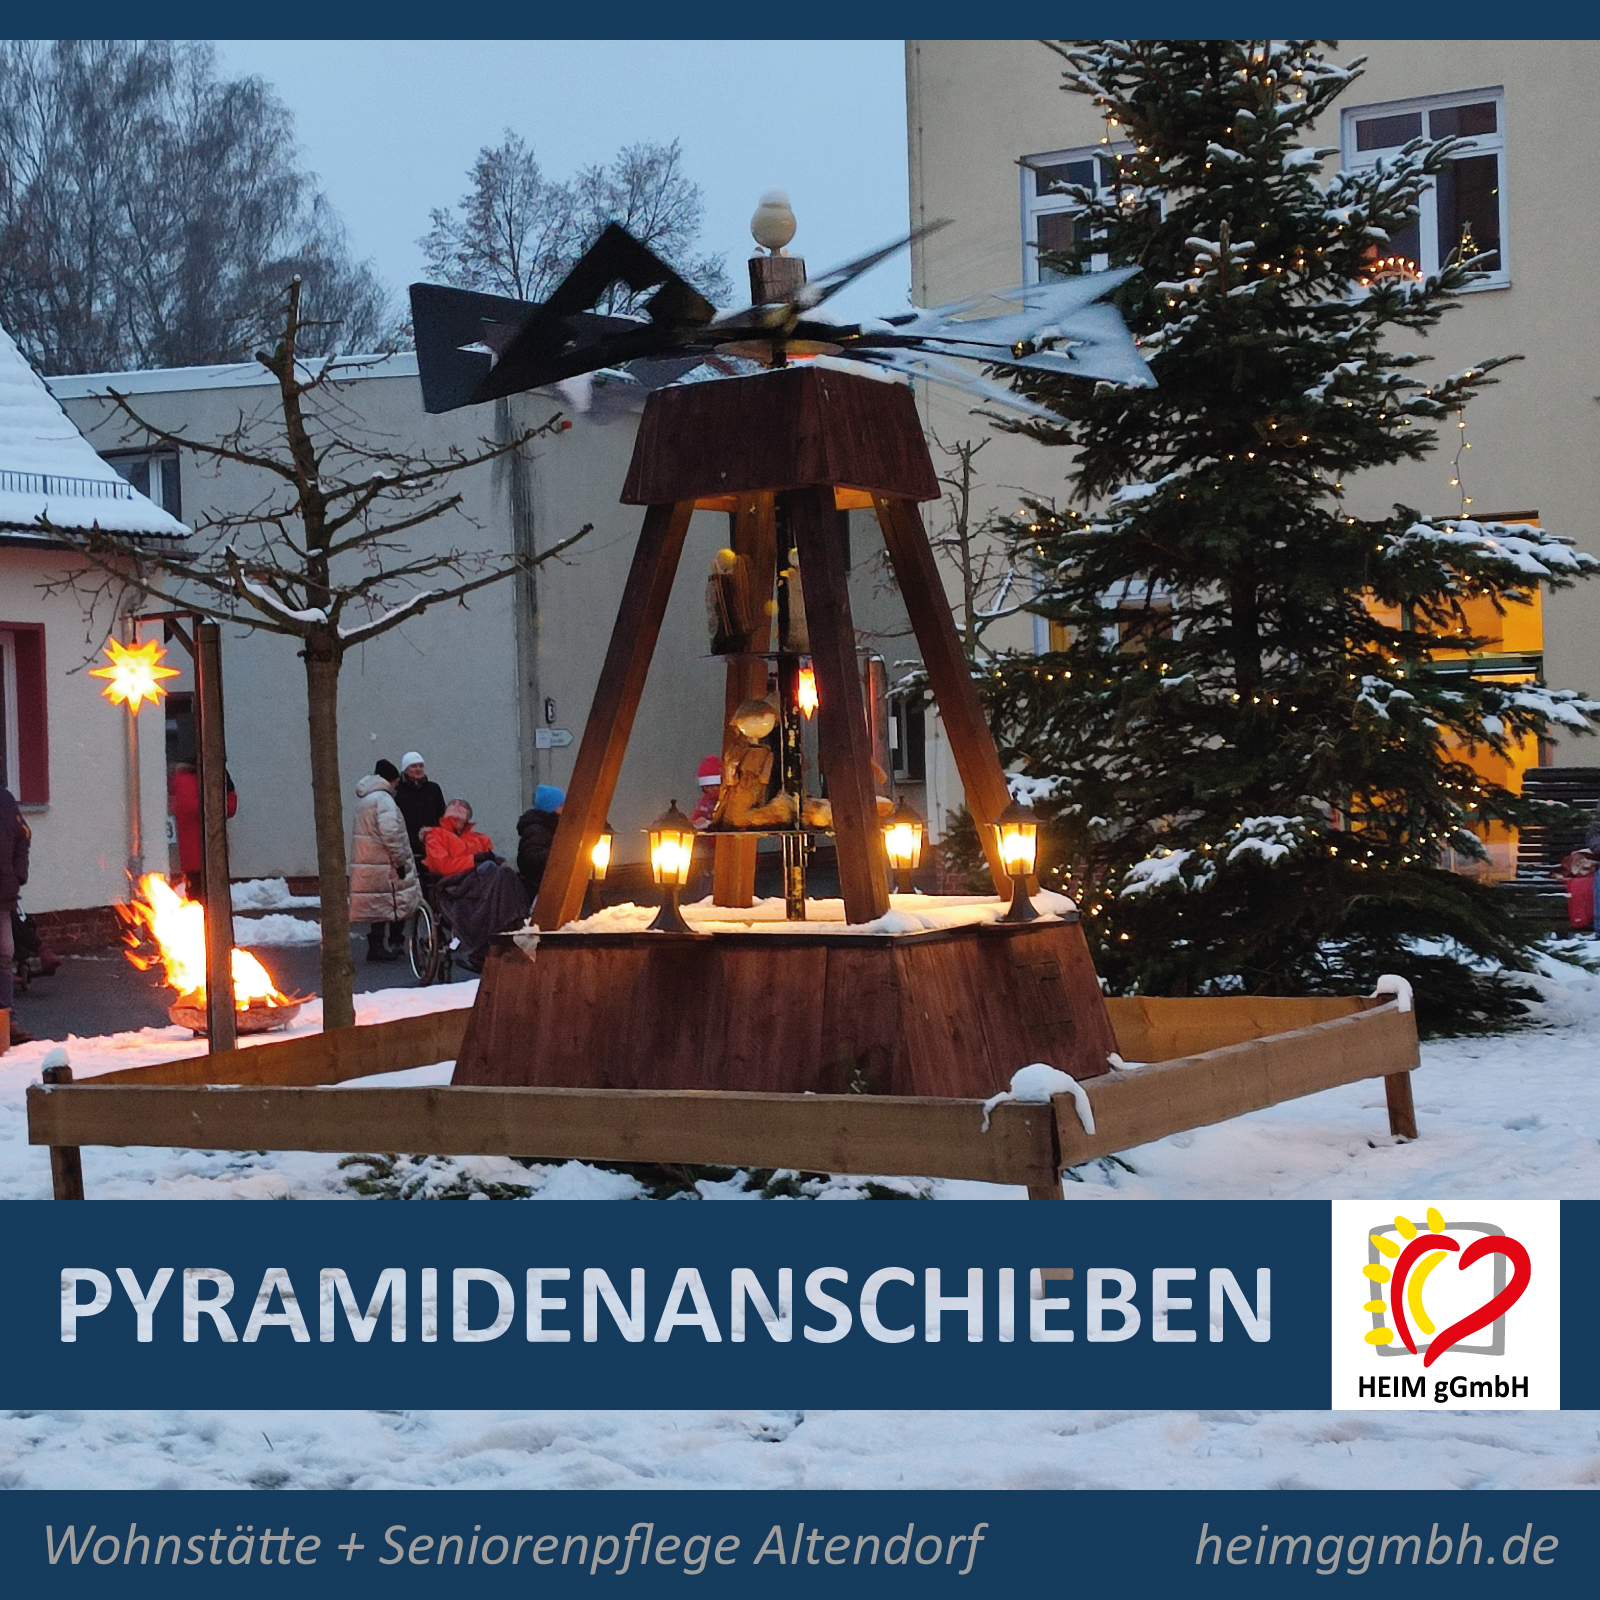 Pyramidenanschieben am 1. Dezember 2023 bei der Seniorenpflege Altedorf und der Wohnstätte Altendorf der HEIM gGmbH